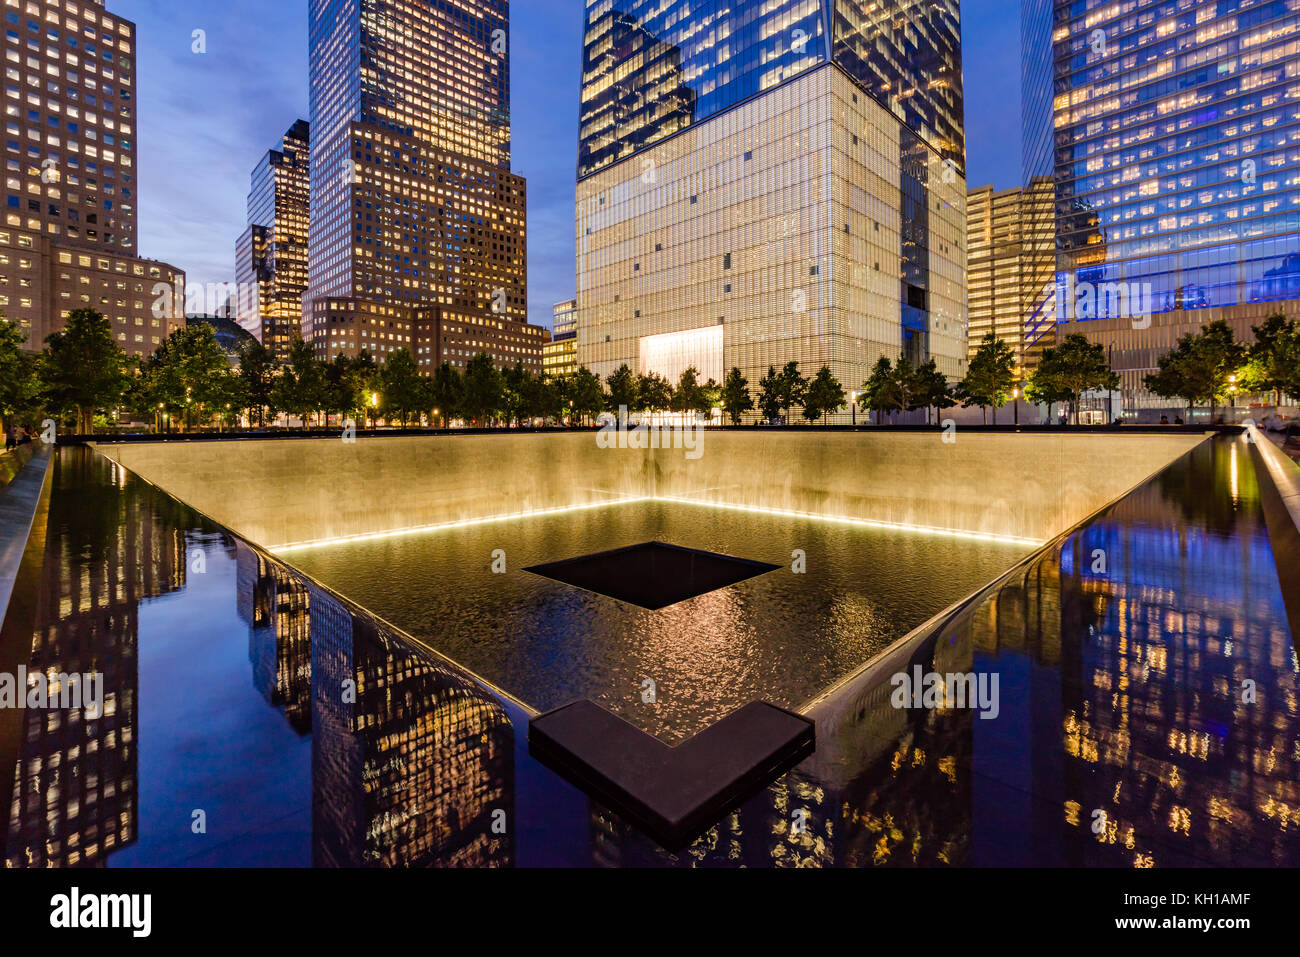 L'Amérique du miroir d'eau au crépuscule lumineux avec vue de One World Trade Center. Lower Manhattan, 9/11 Memorial & Museum, New York City Banque D'Images